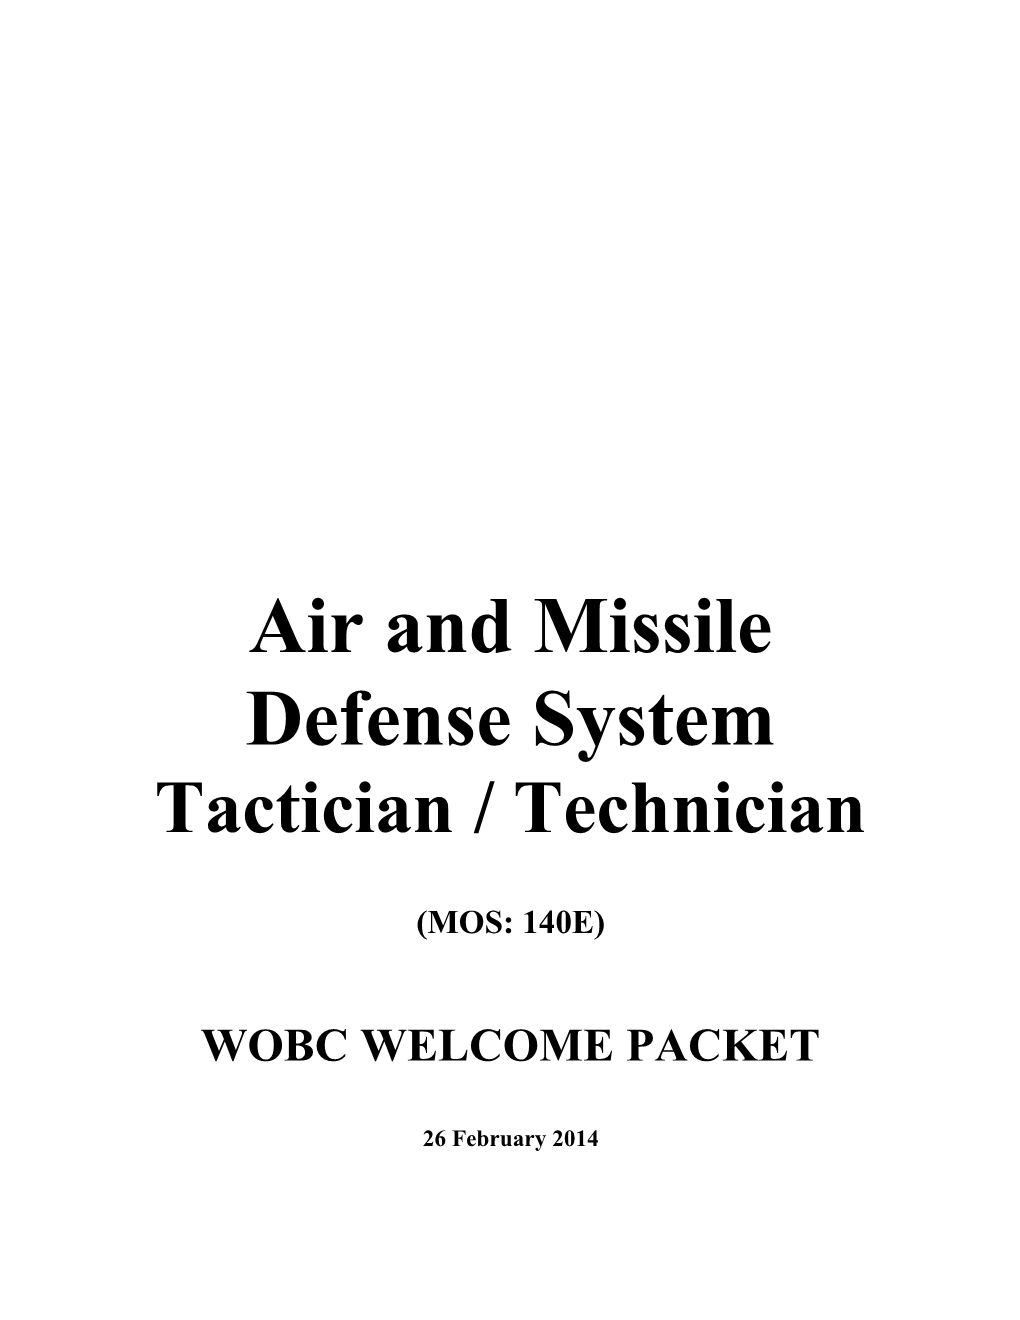 Tactician/Technician